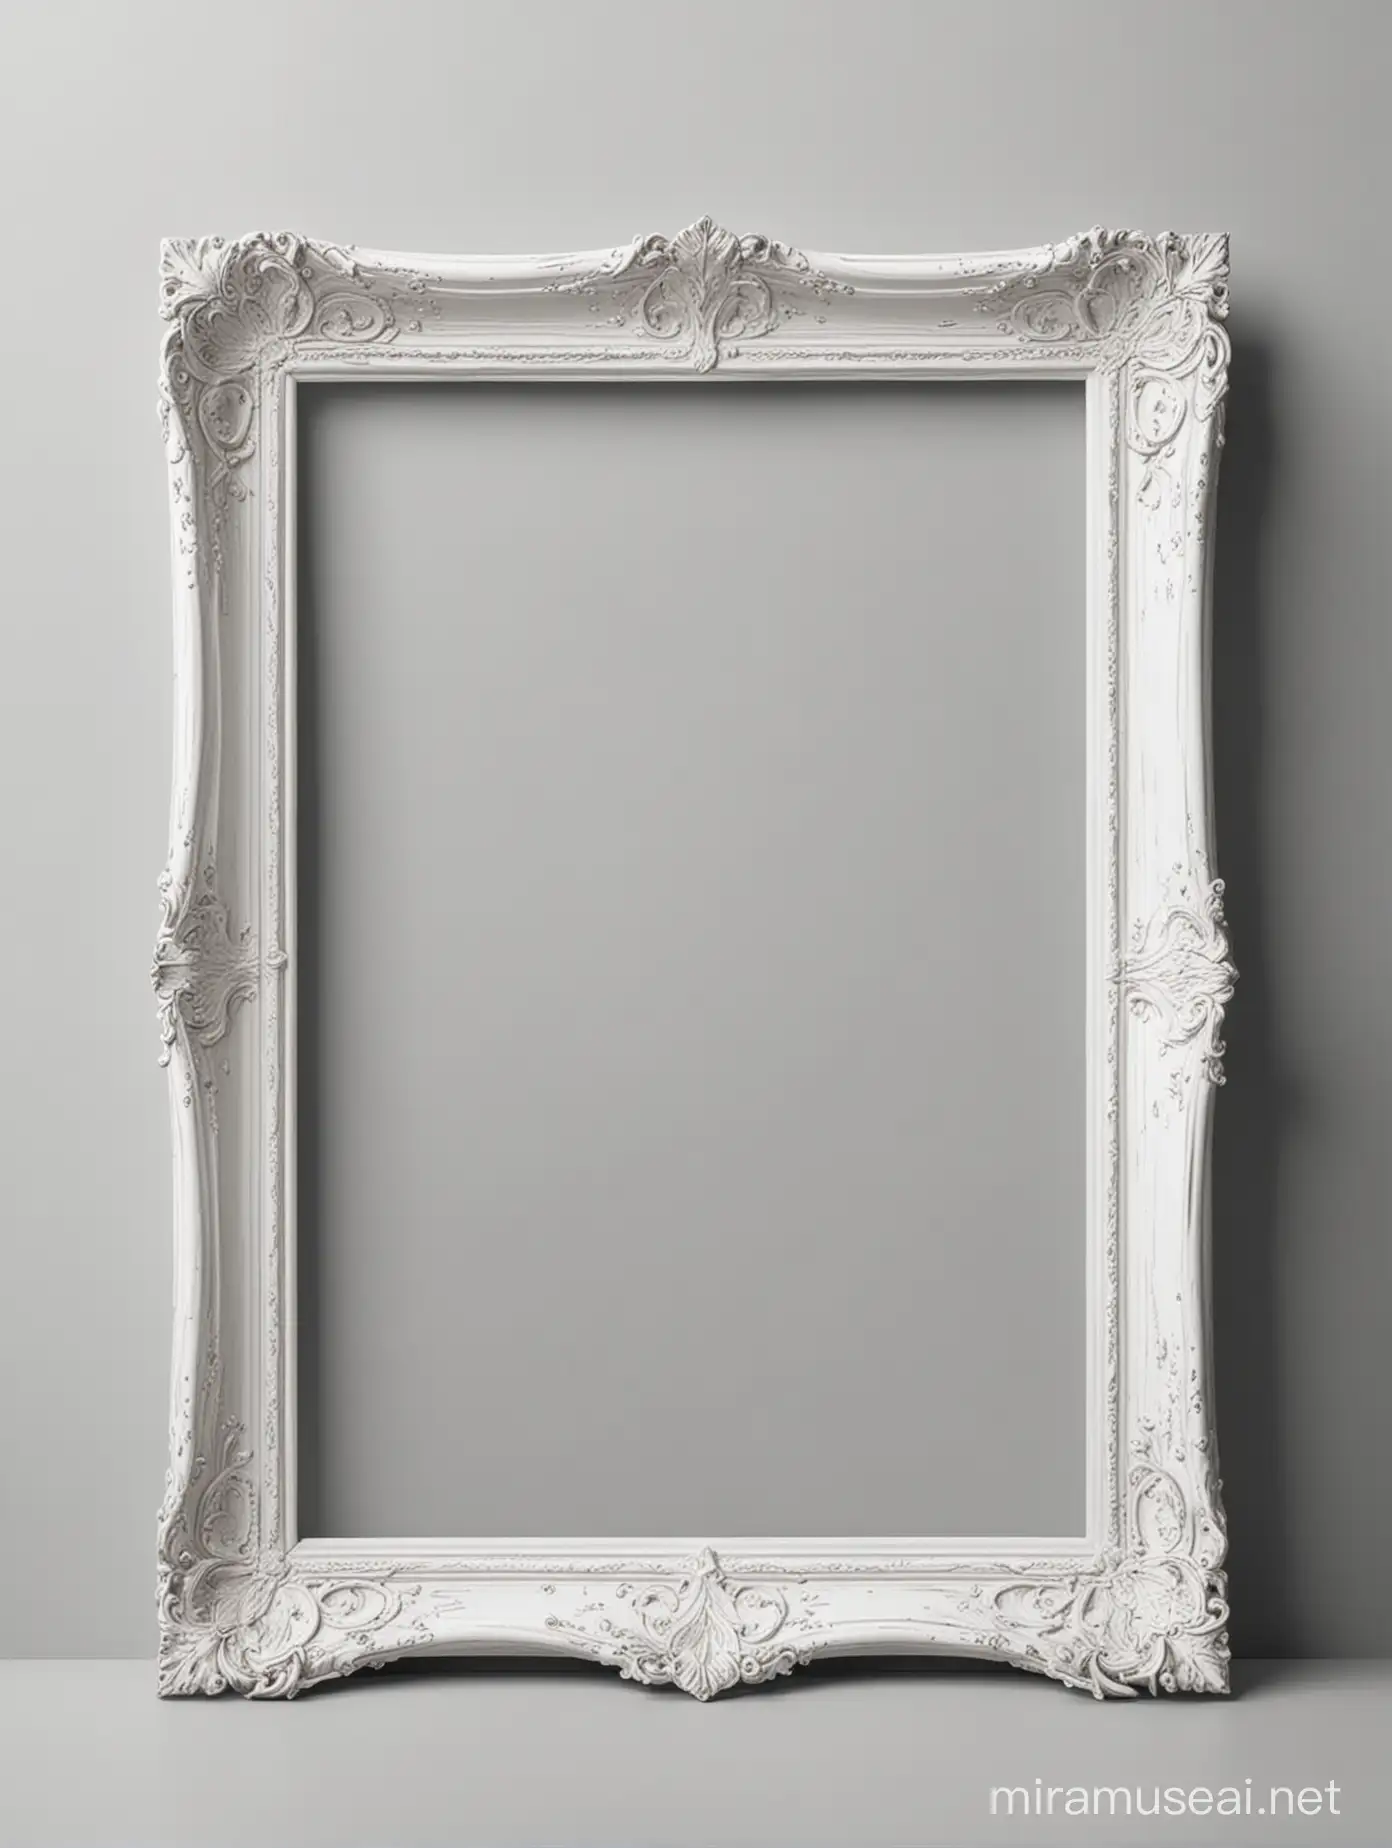 empty elegant frame. modern. white background
